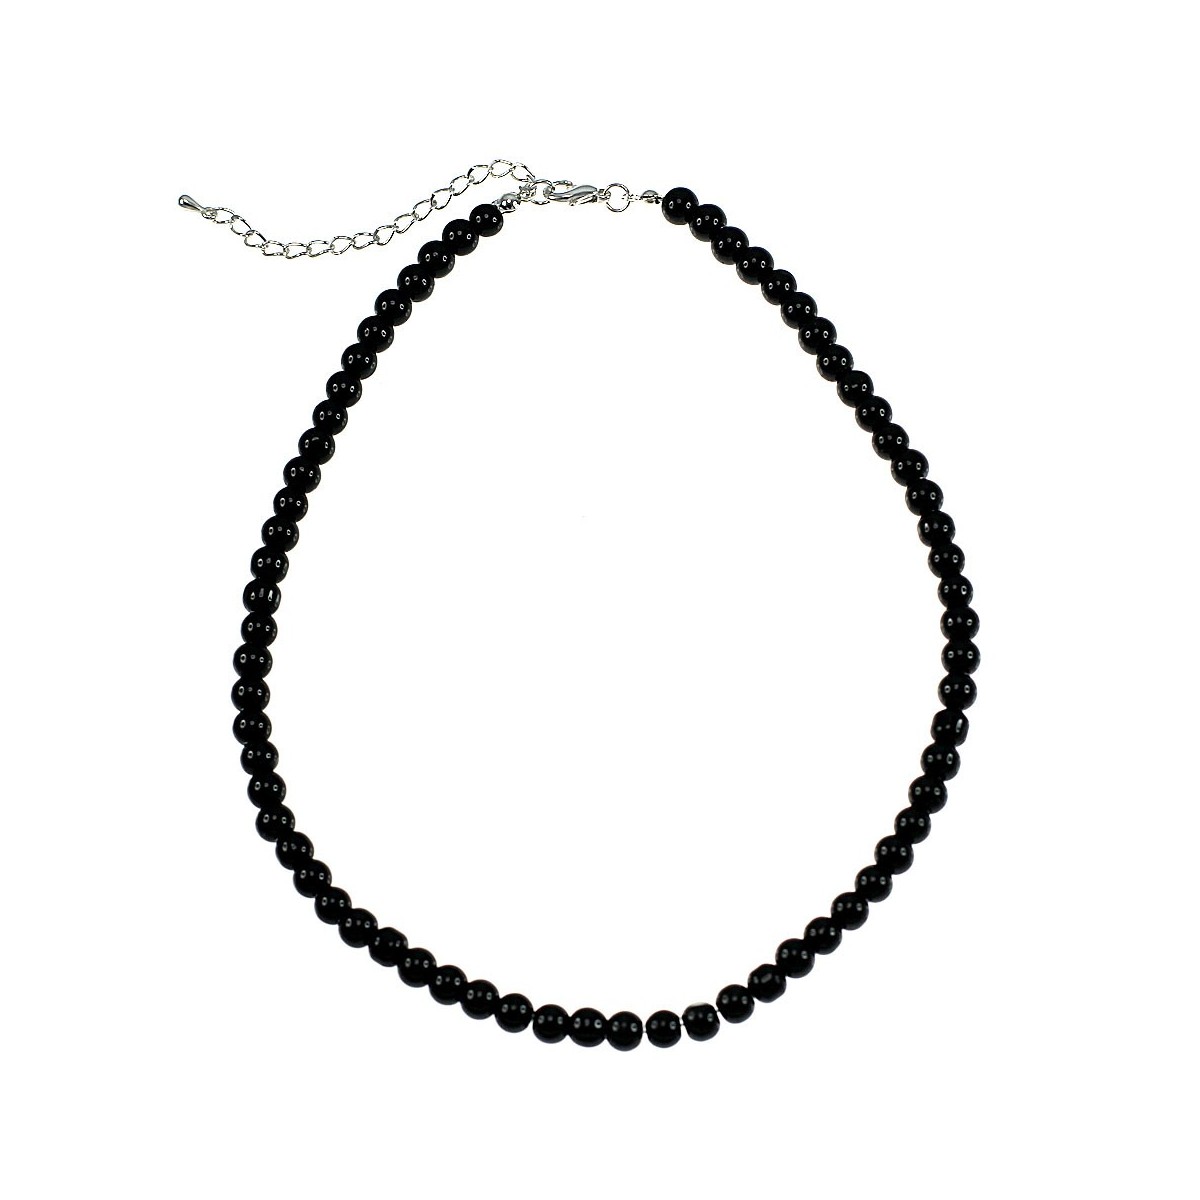 Collier perles de verre noir